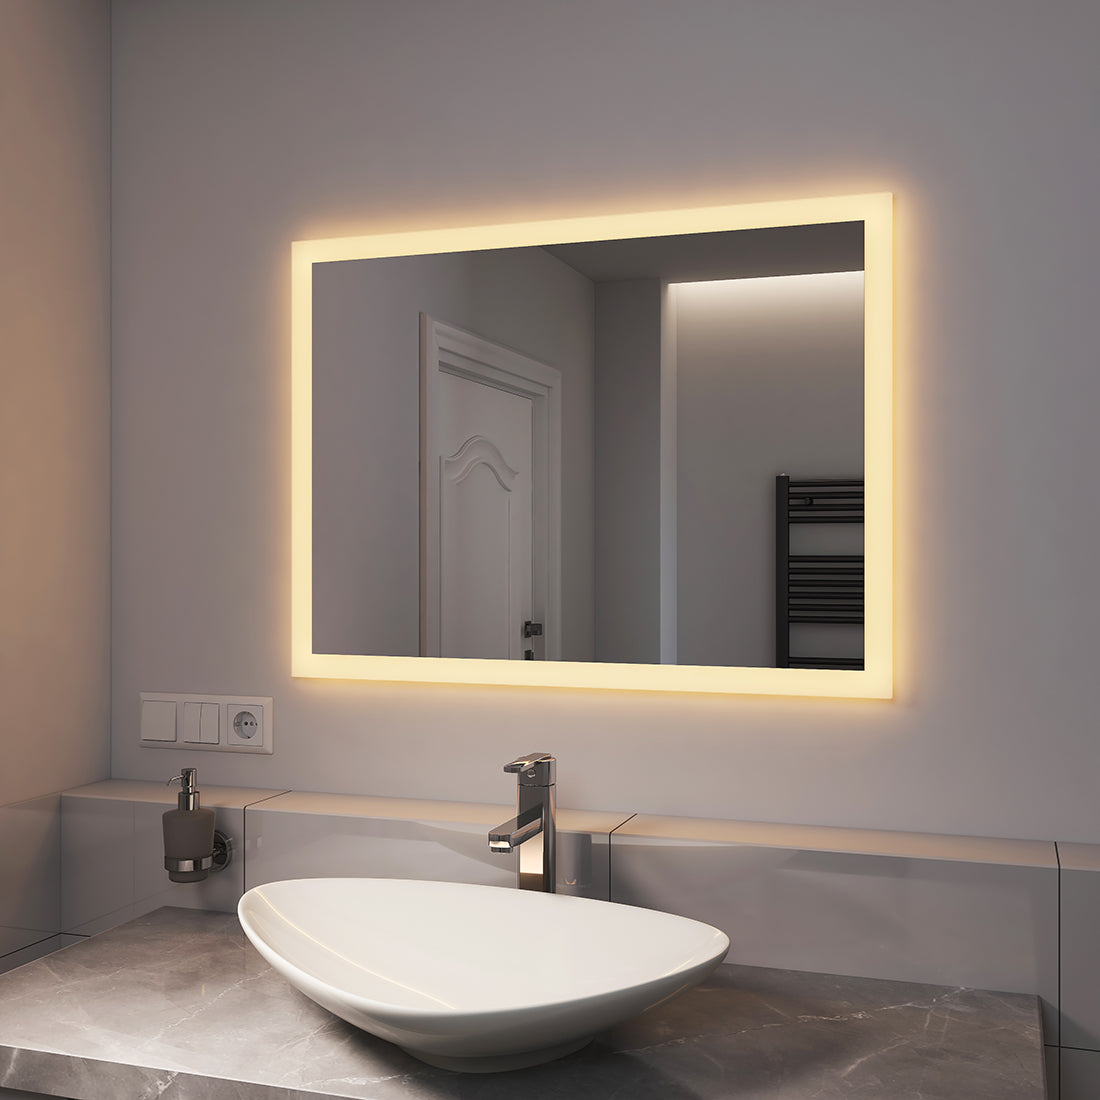 EMKE LED Spiegel 80 x 60 cm – Badspiegel mit Beleuchtung Wandschalter – 3000K warmweiß